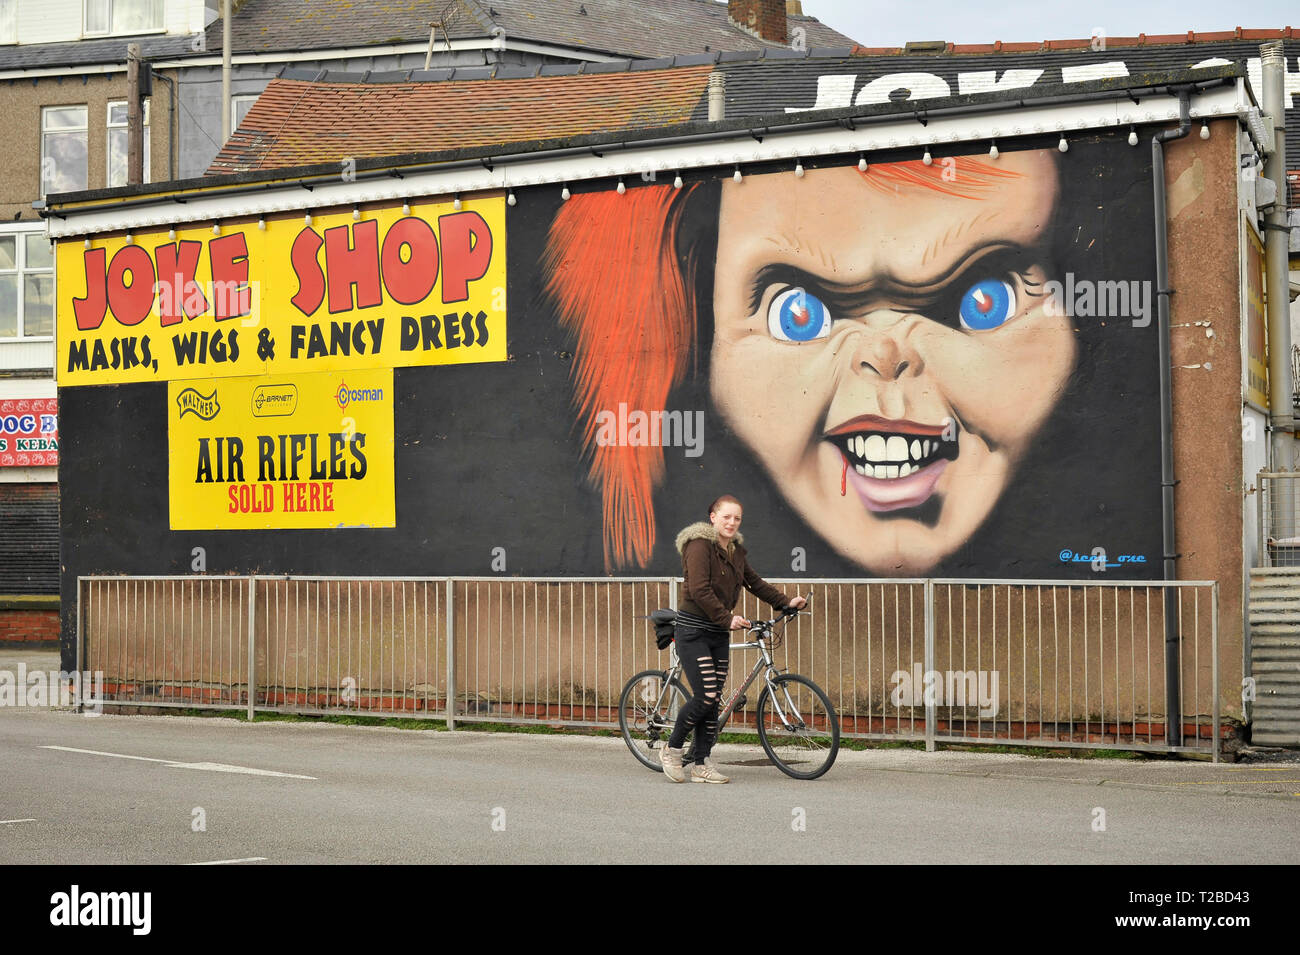 Las mujeres empujando bike pasado cartel junto con la imagen del payaso mal chiste publicidad shop Foto de stock